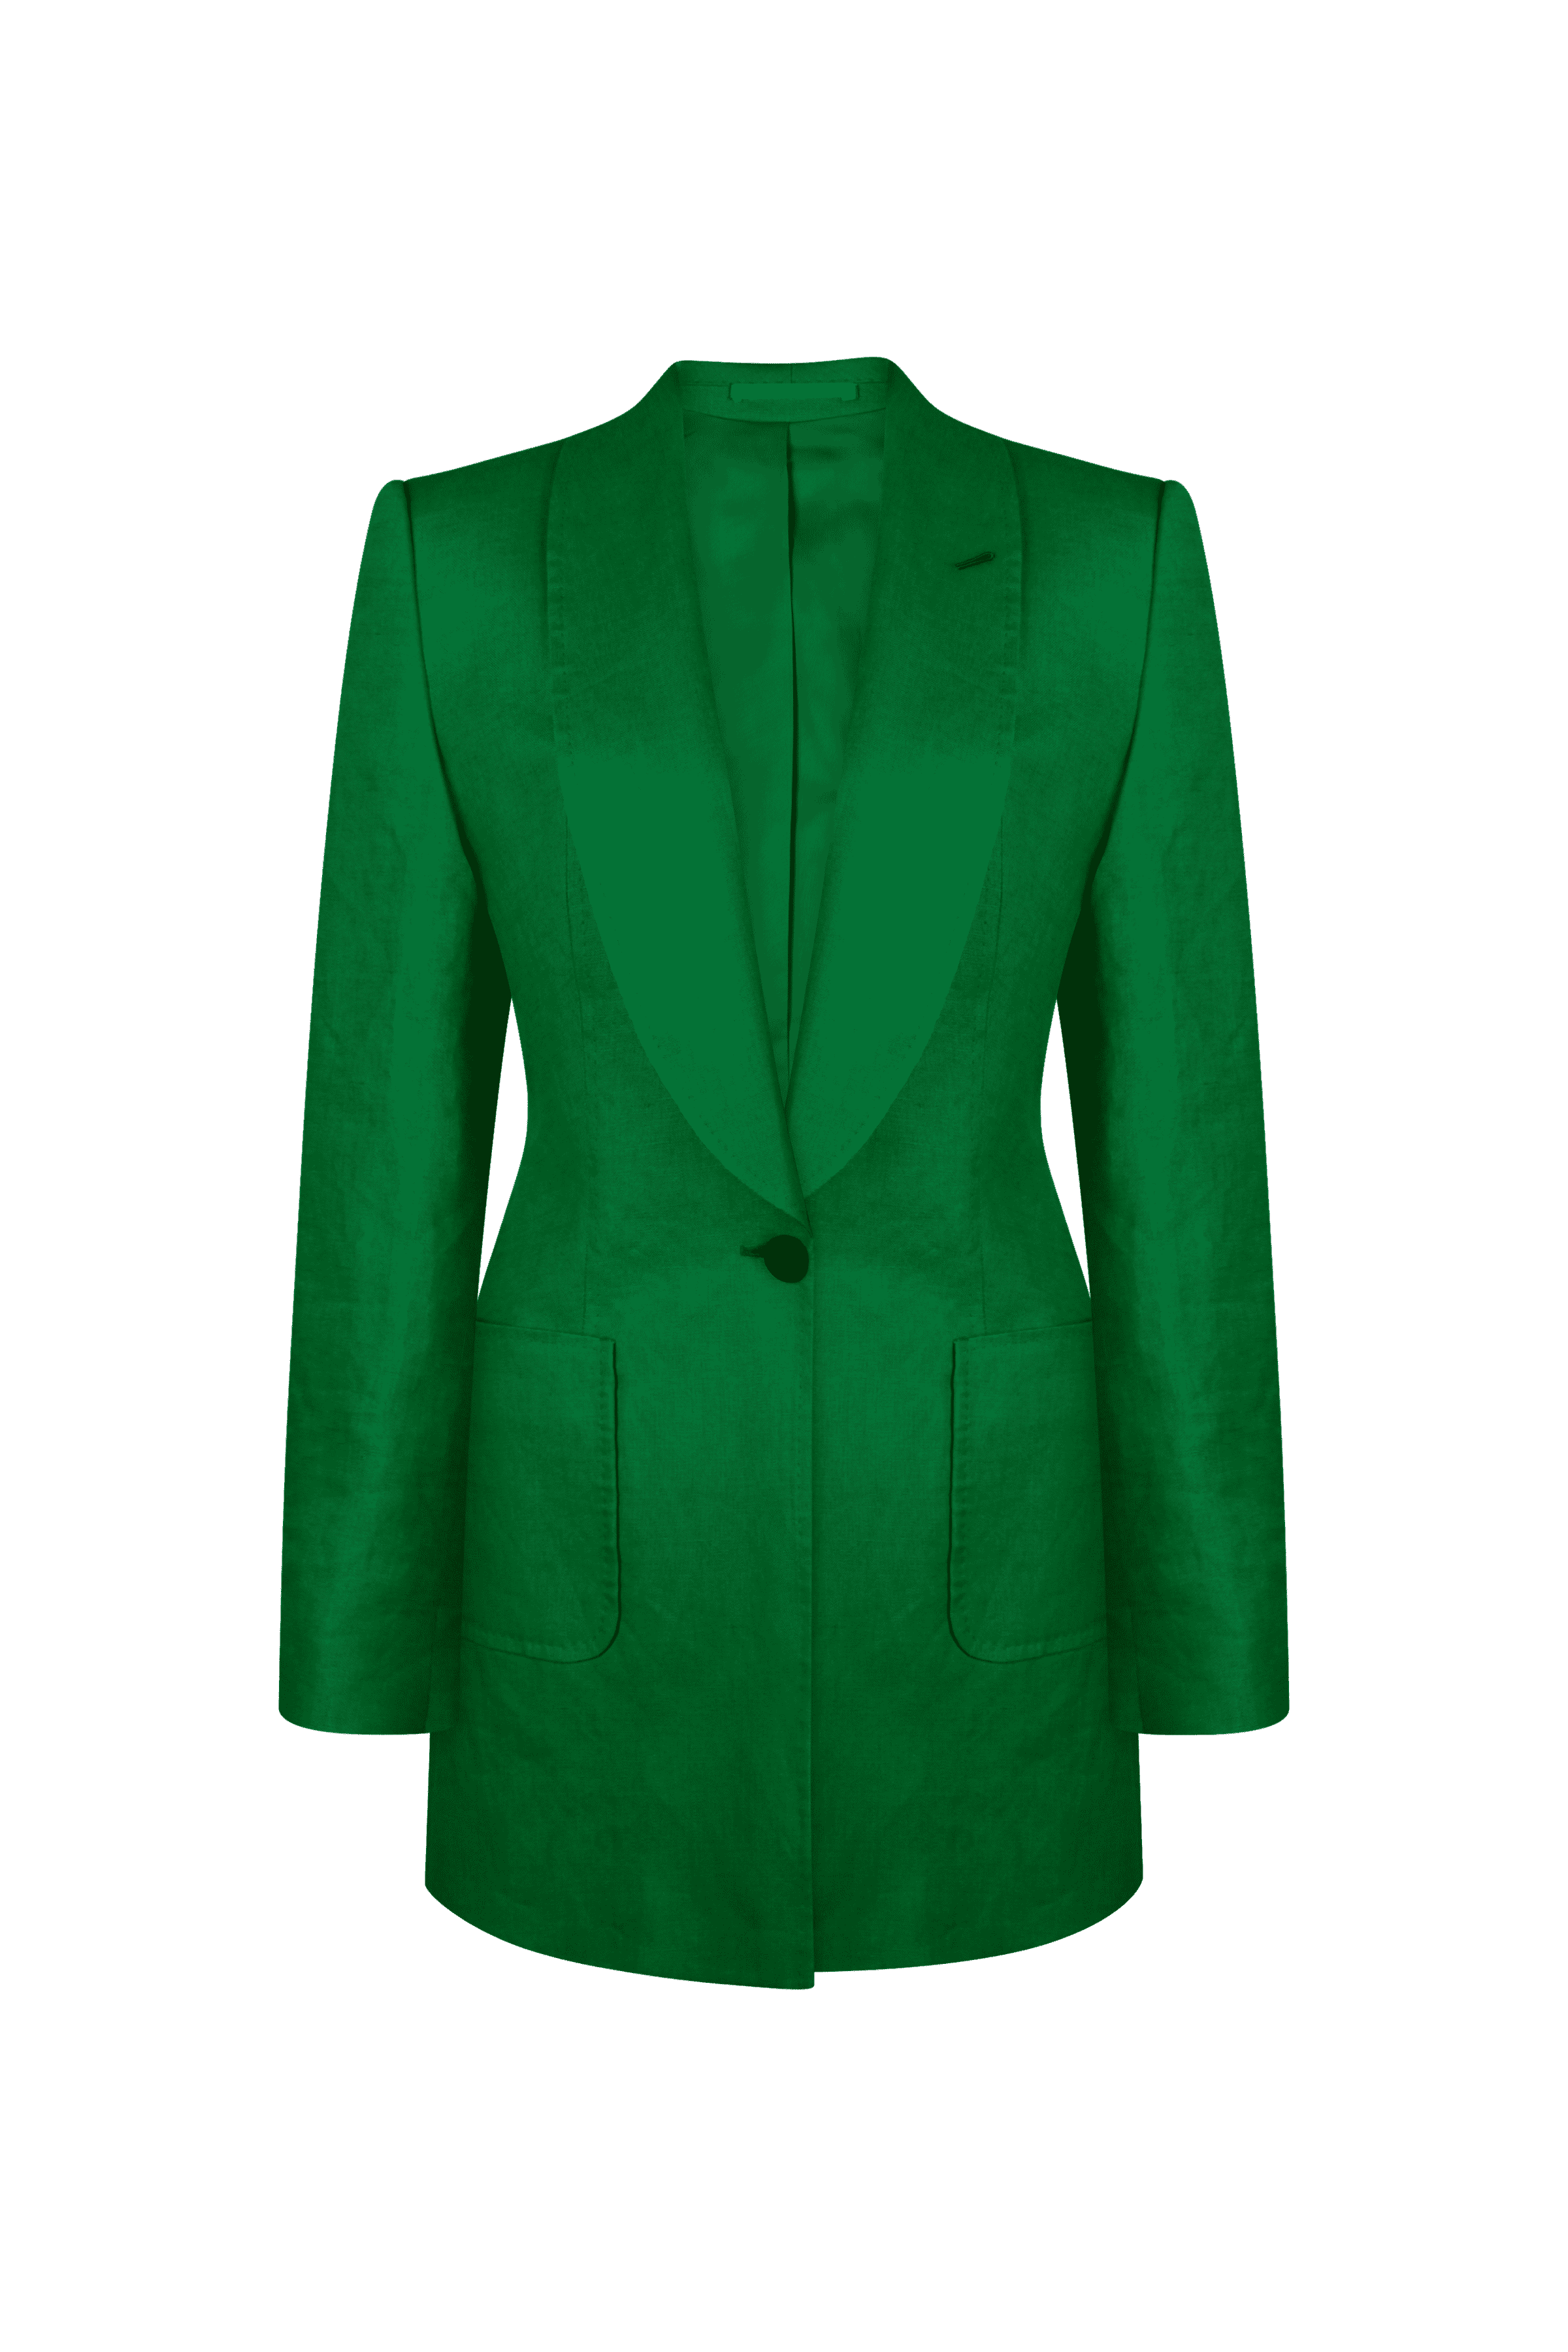 Knot Standard Emerald Green Linen Blazer by Knot Standard